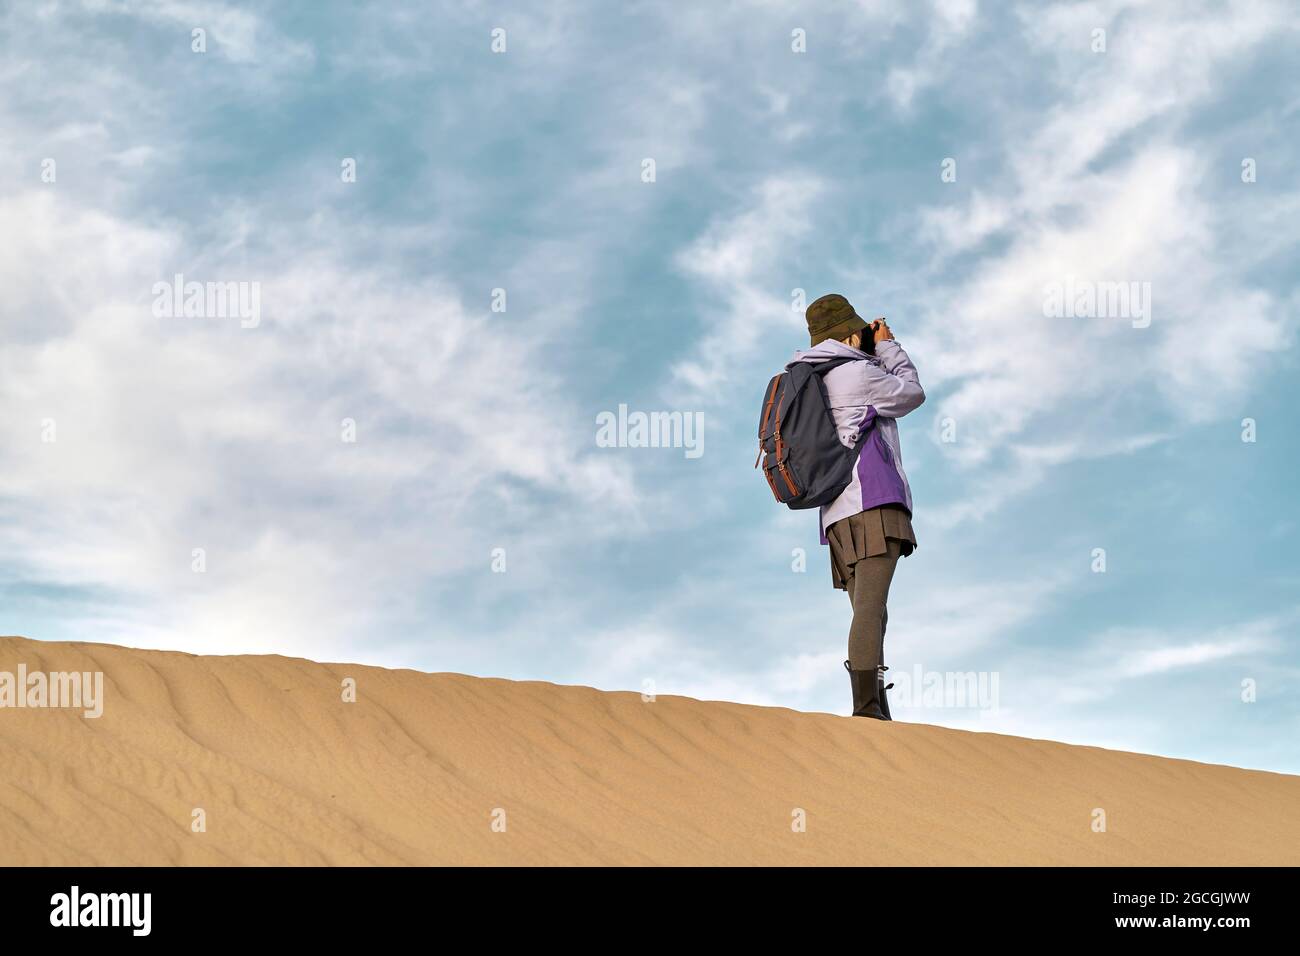 photographe asiatique debout au-dessus d'une dune de sable prenant une photo Banque D'Images